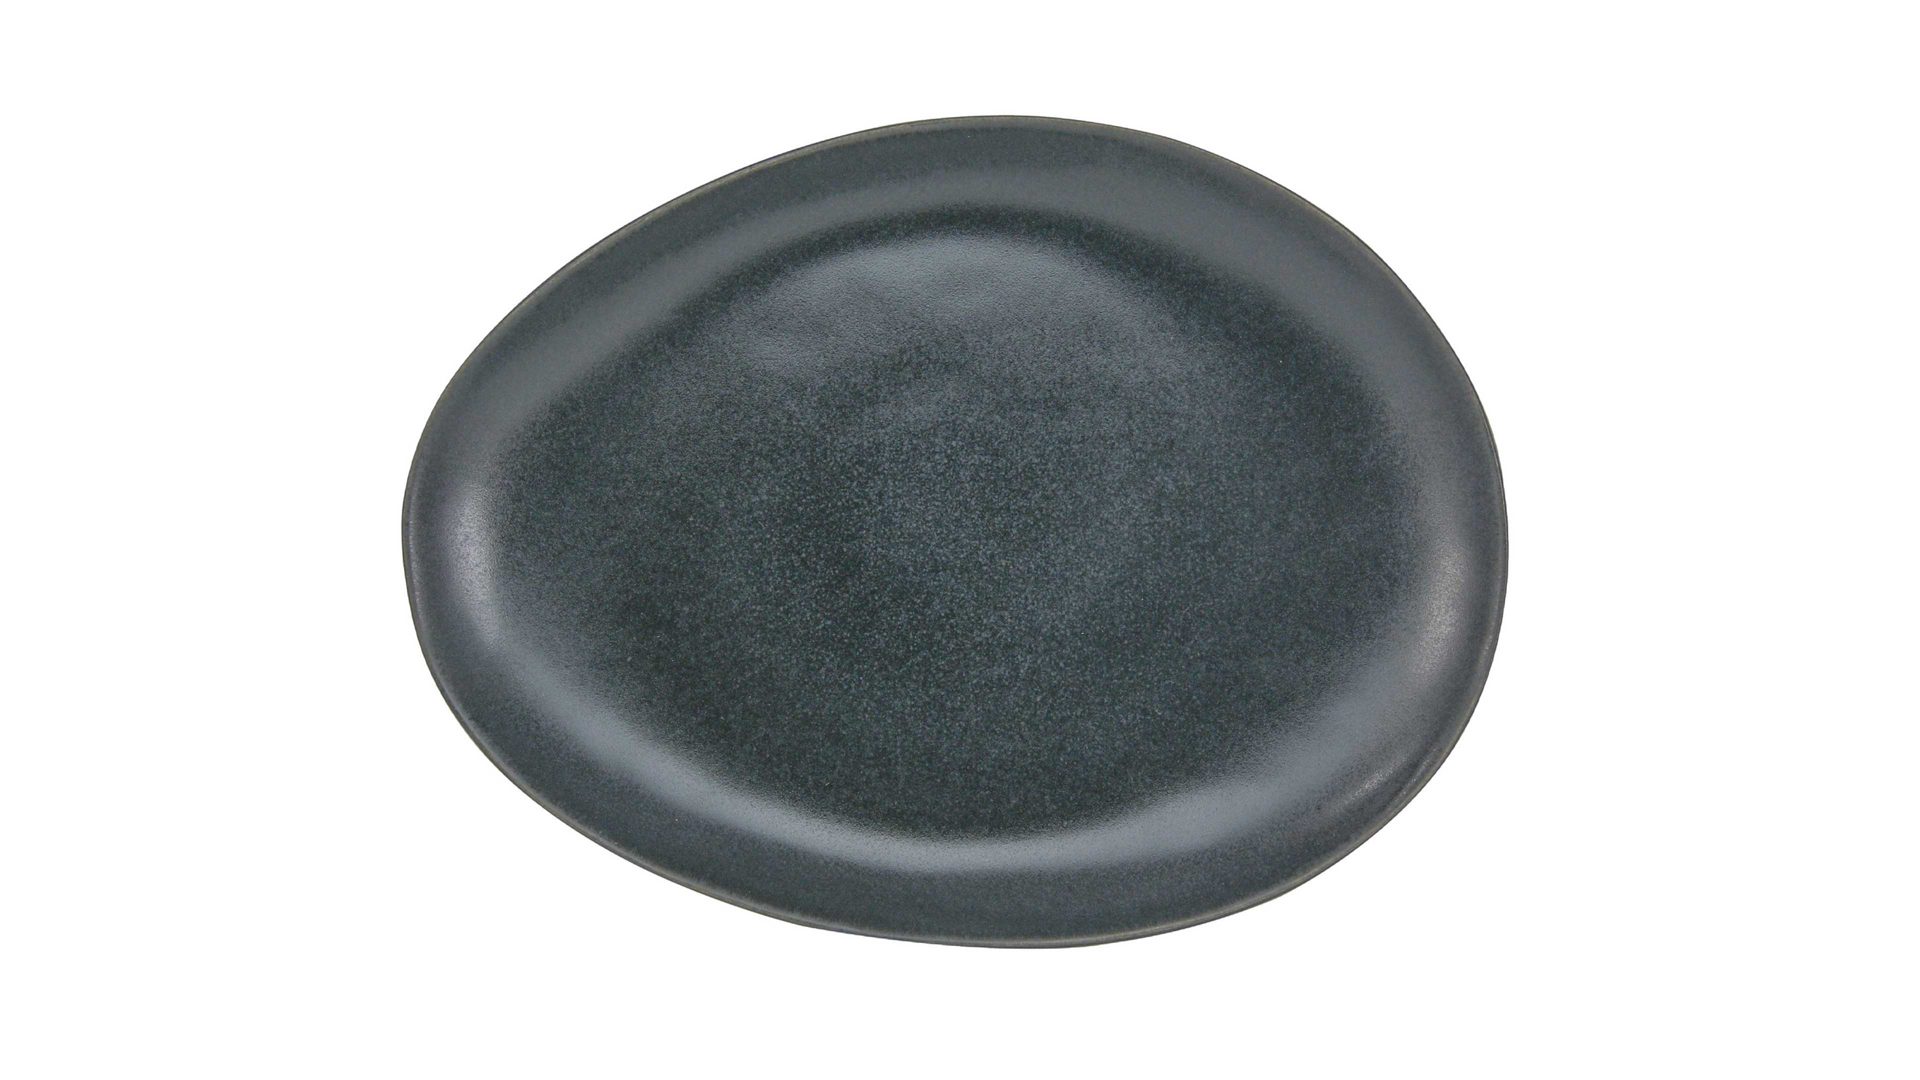 Kuchenteller Creatable aus Steinzeug in Schwarz CREATABLE Pietra – Dessertteller schwarzes Steinzeug – ca. 17 x 22 cm